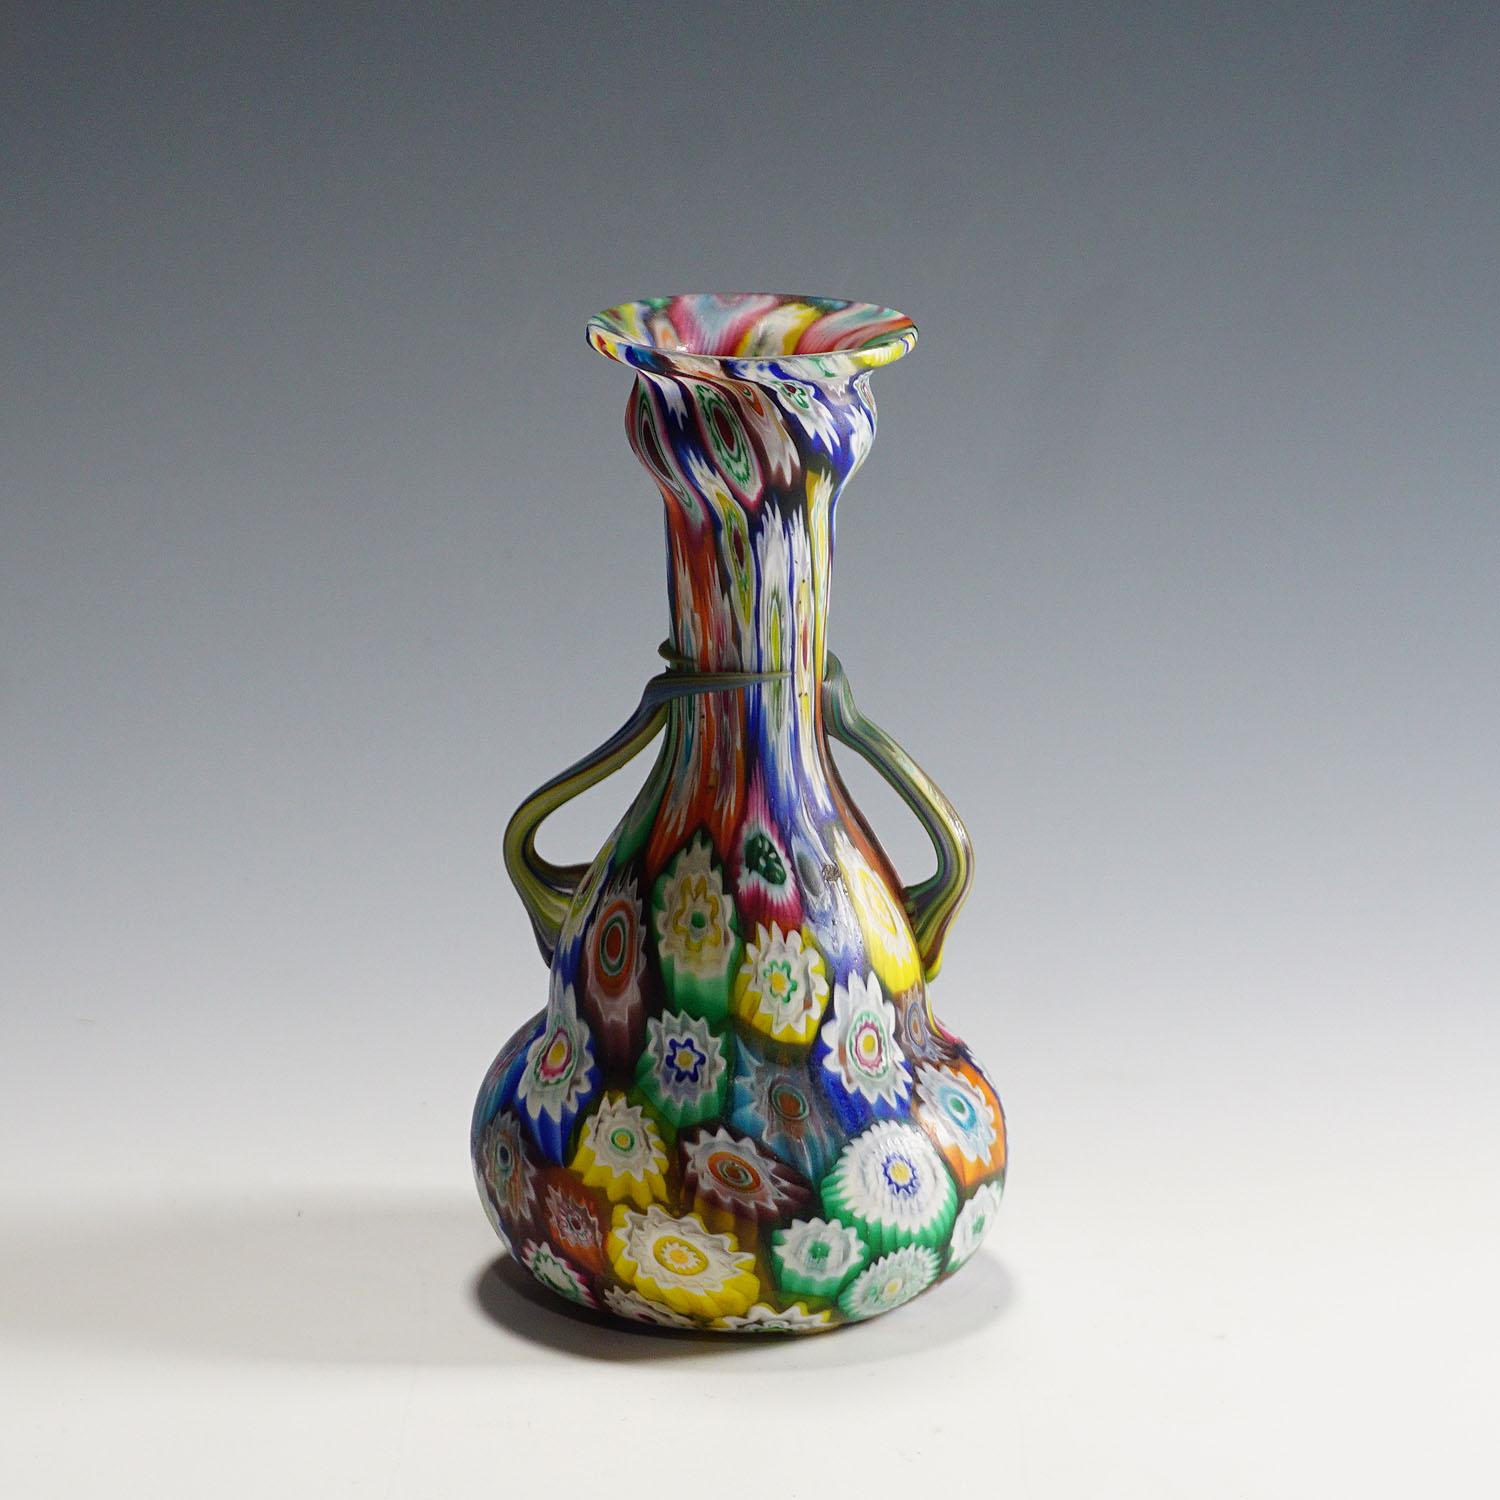 Un très beau vase en verre murrine, fabriqué par Vetreria Fratelli Toso au début du 20e siècle. Le vase est exécuté avec des murrines de millefiori polychromes et multicolores et possède deux anses. Un exemple authentique de verre d'art de Murano du